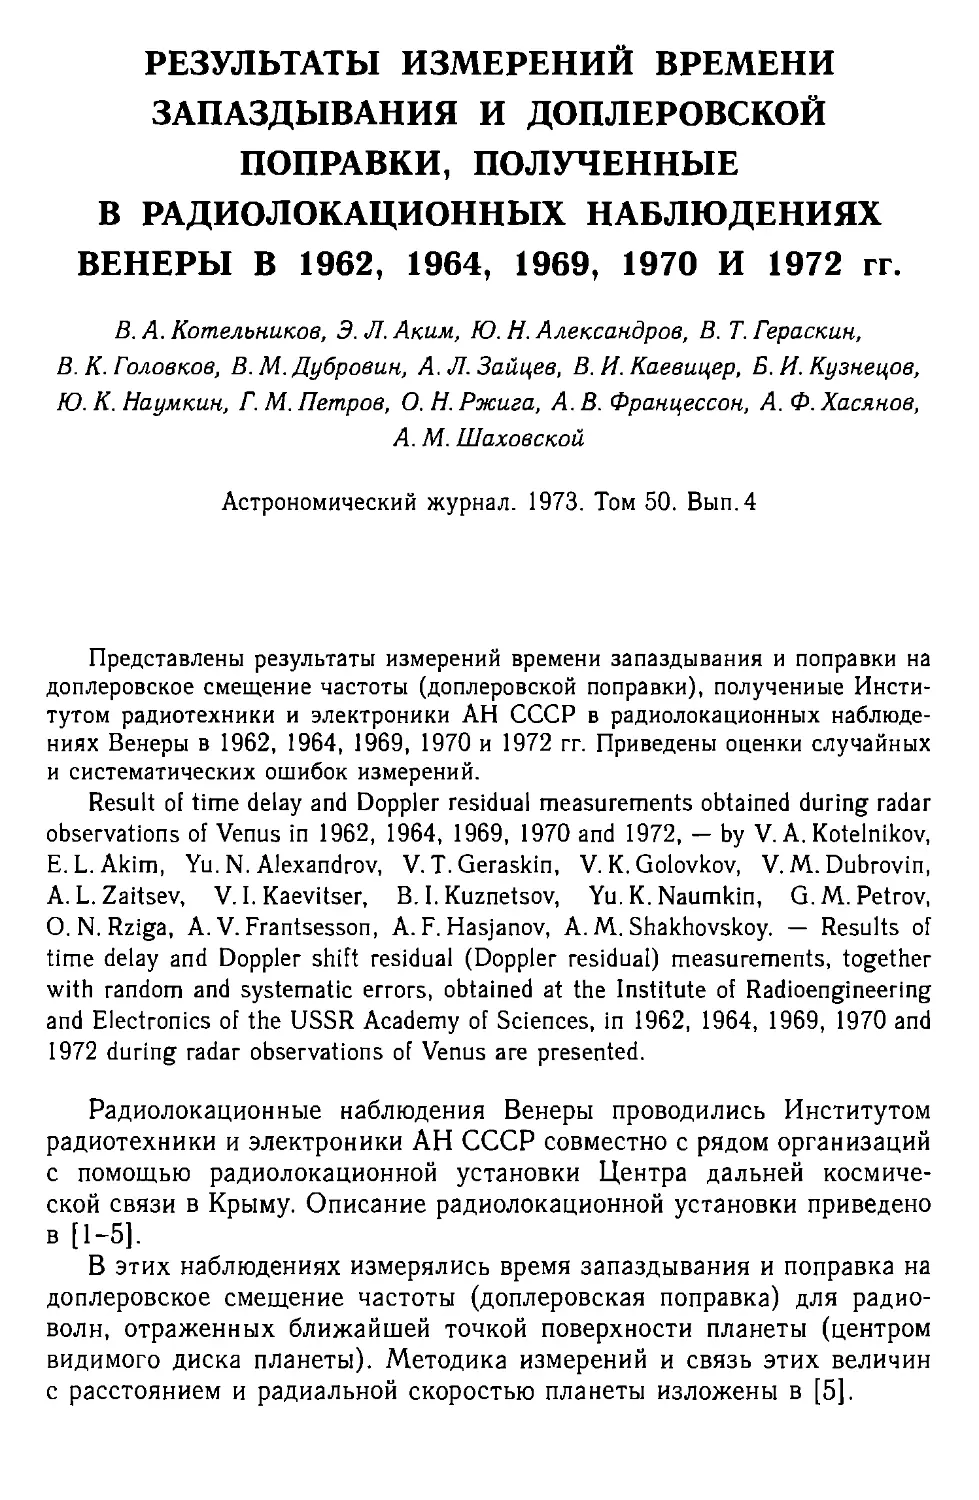 Результаты измерений времени запаздывания и доплеровской поправки, полученные в радиолокационных наблюдениях Венеры в 1962, 1964, 1969, 1970 и 1972 г.